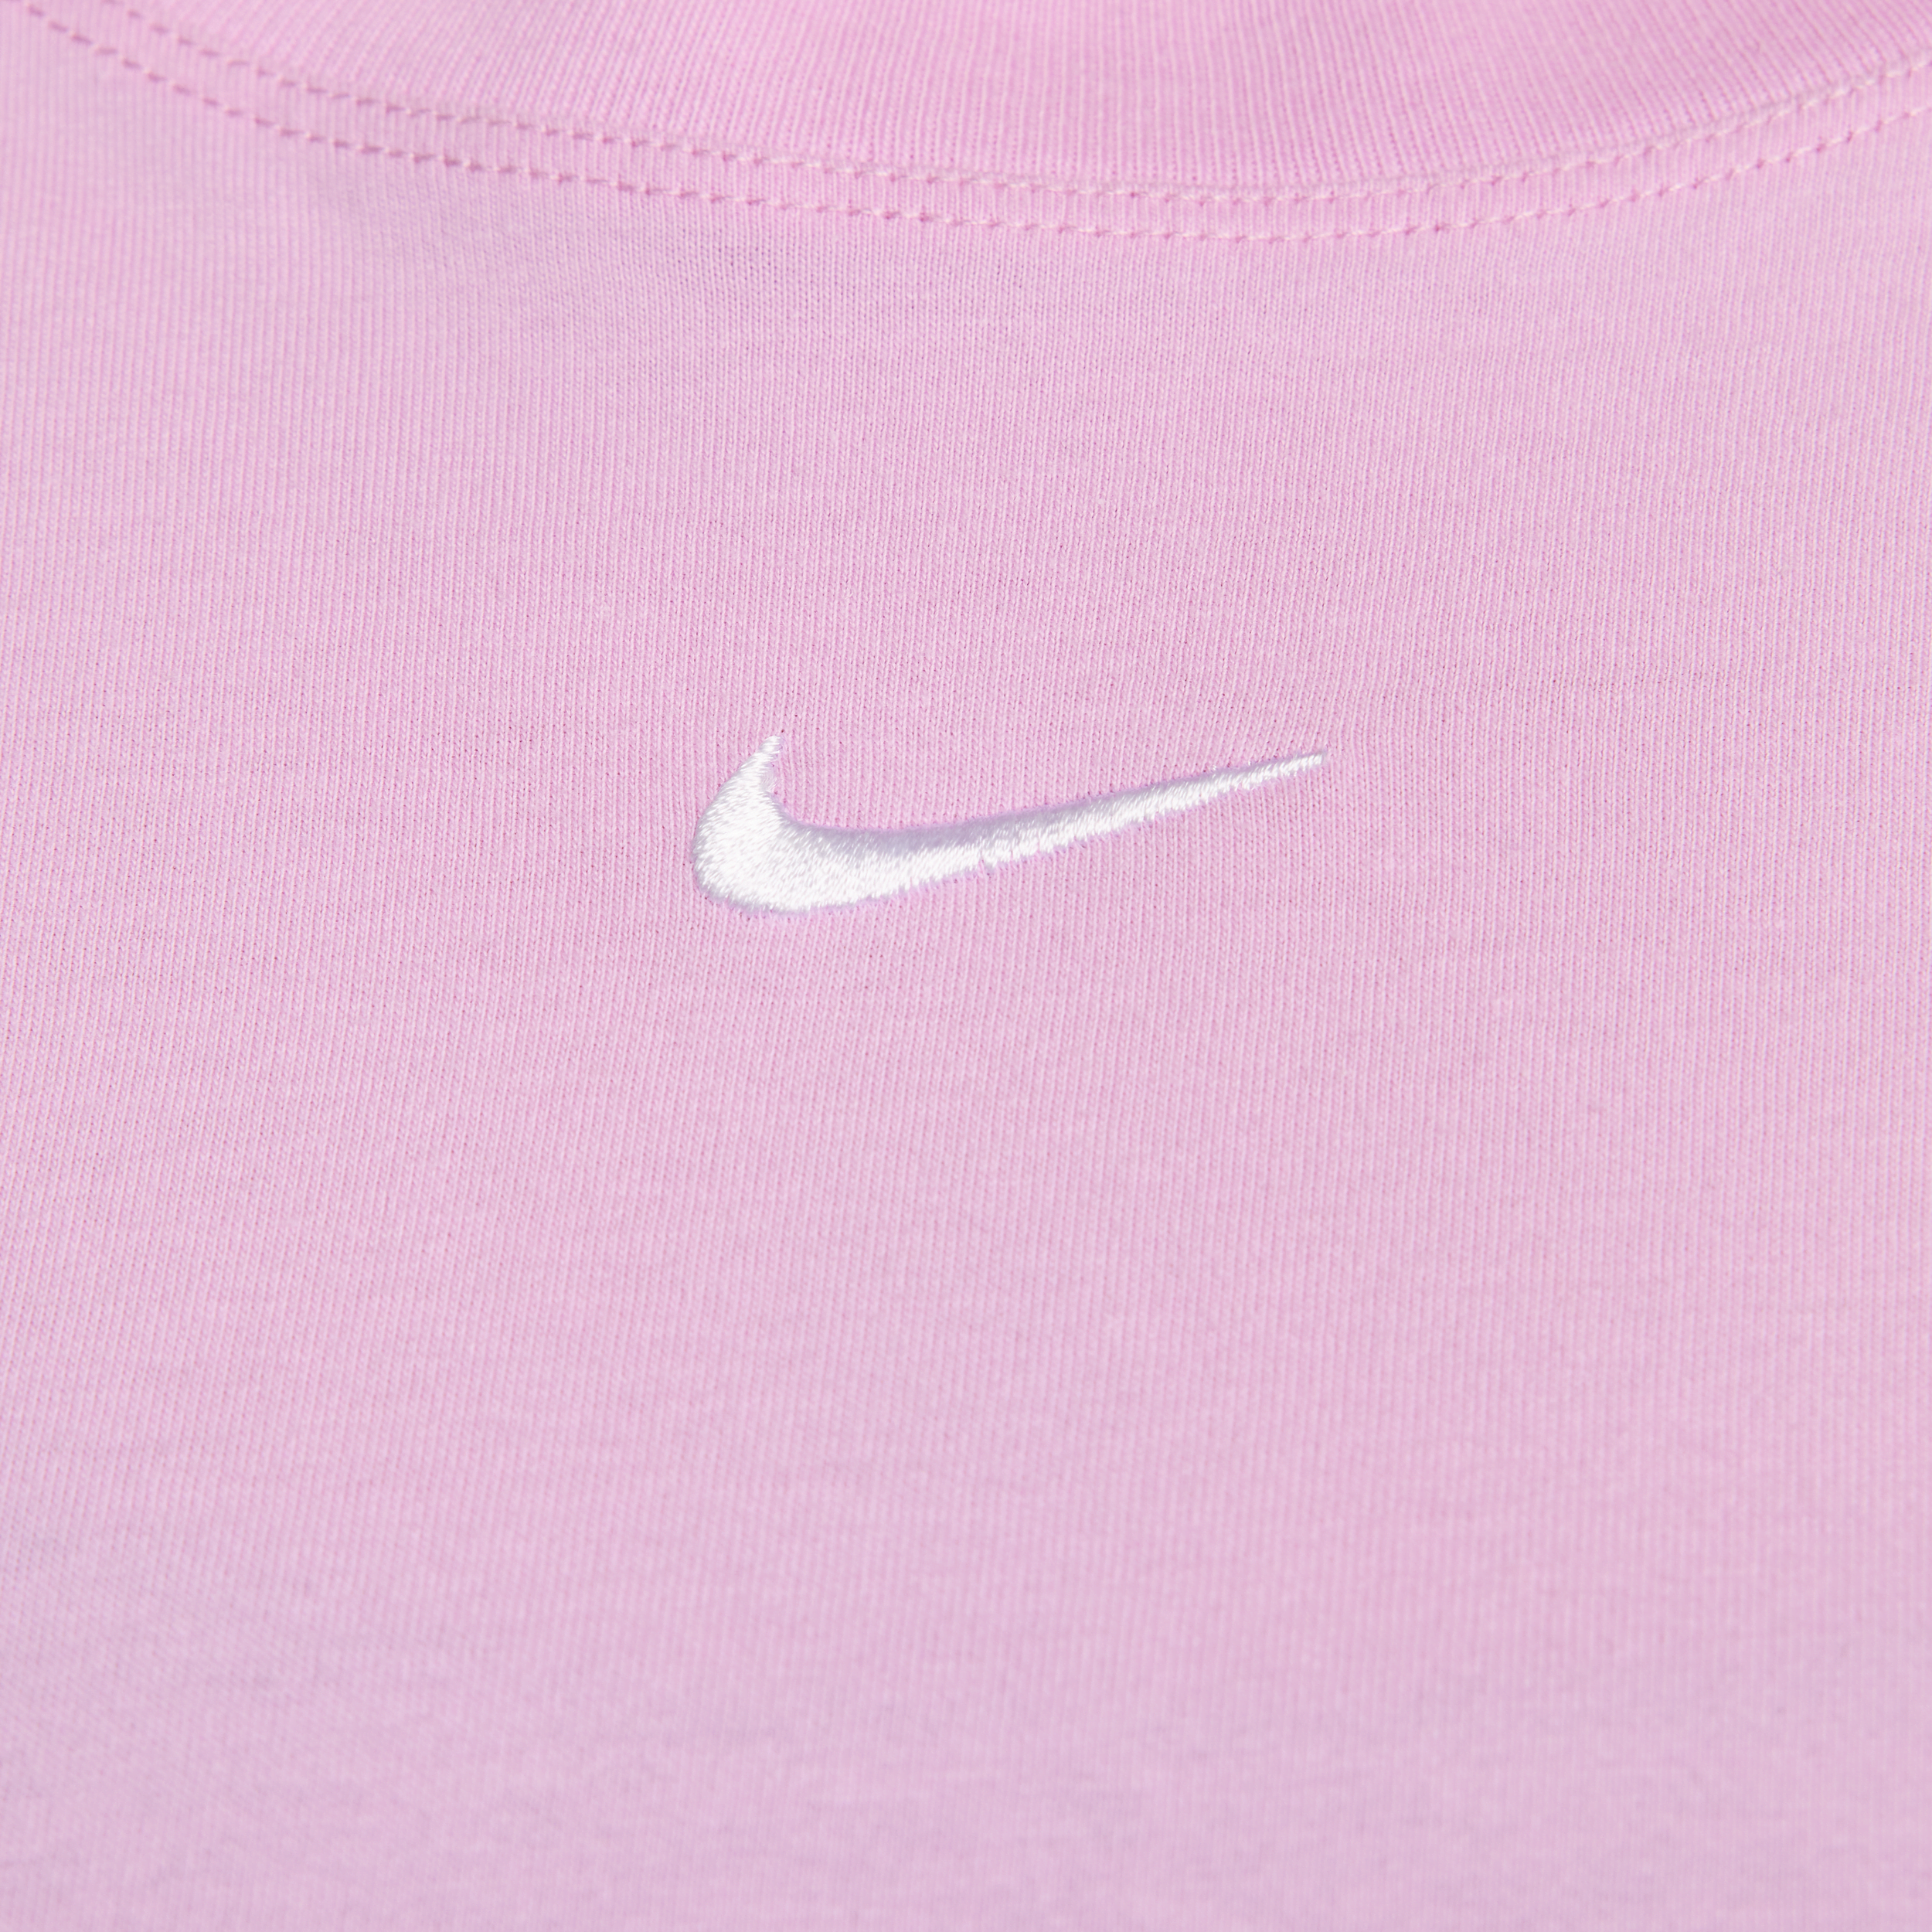 Nike Sportswear Essential T-shirt voor dames (Plus Size) Roze